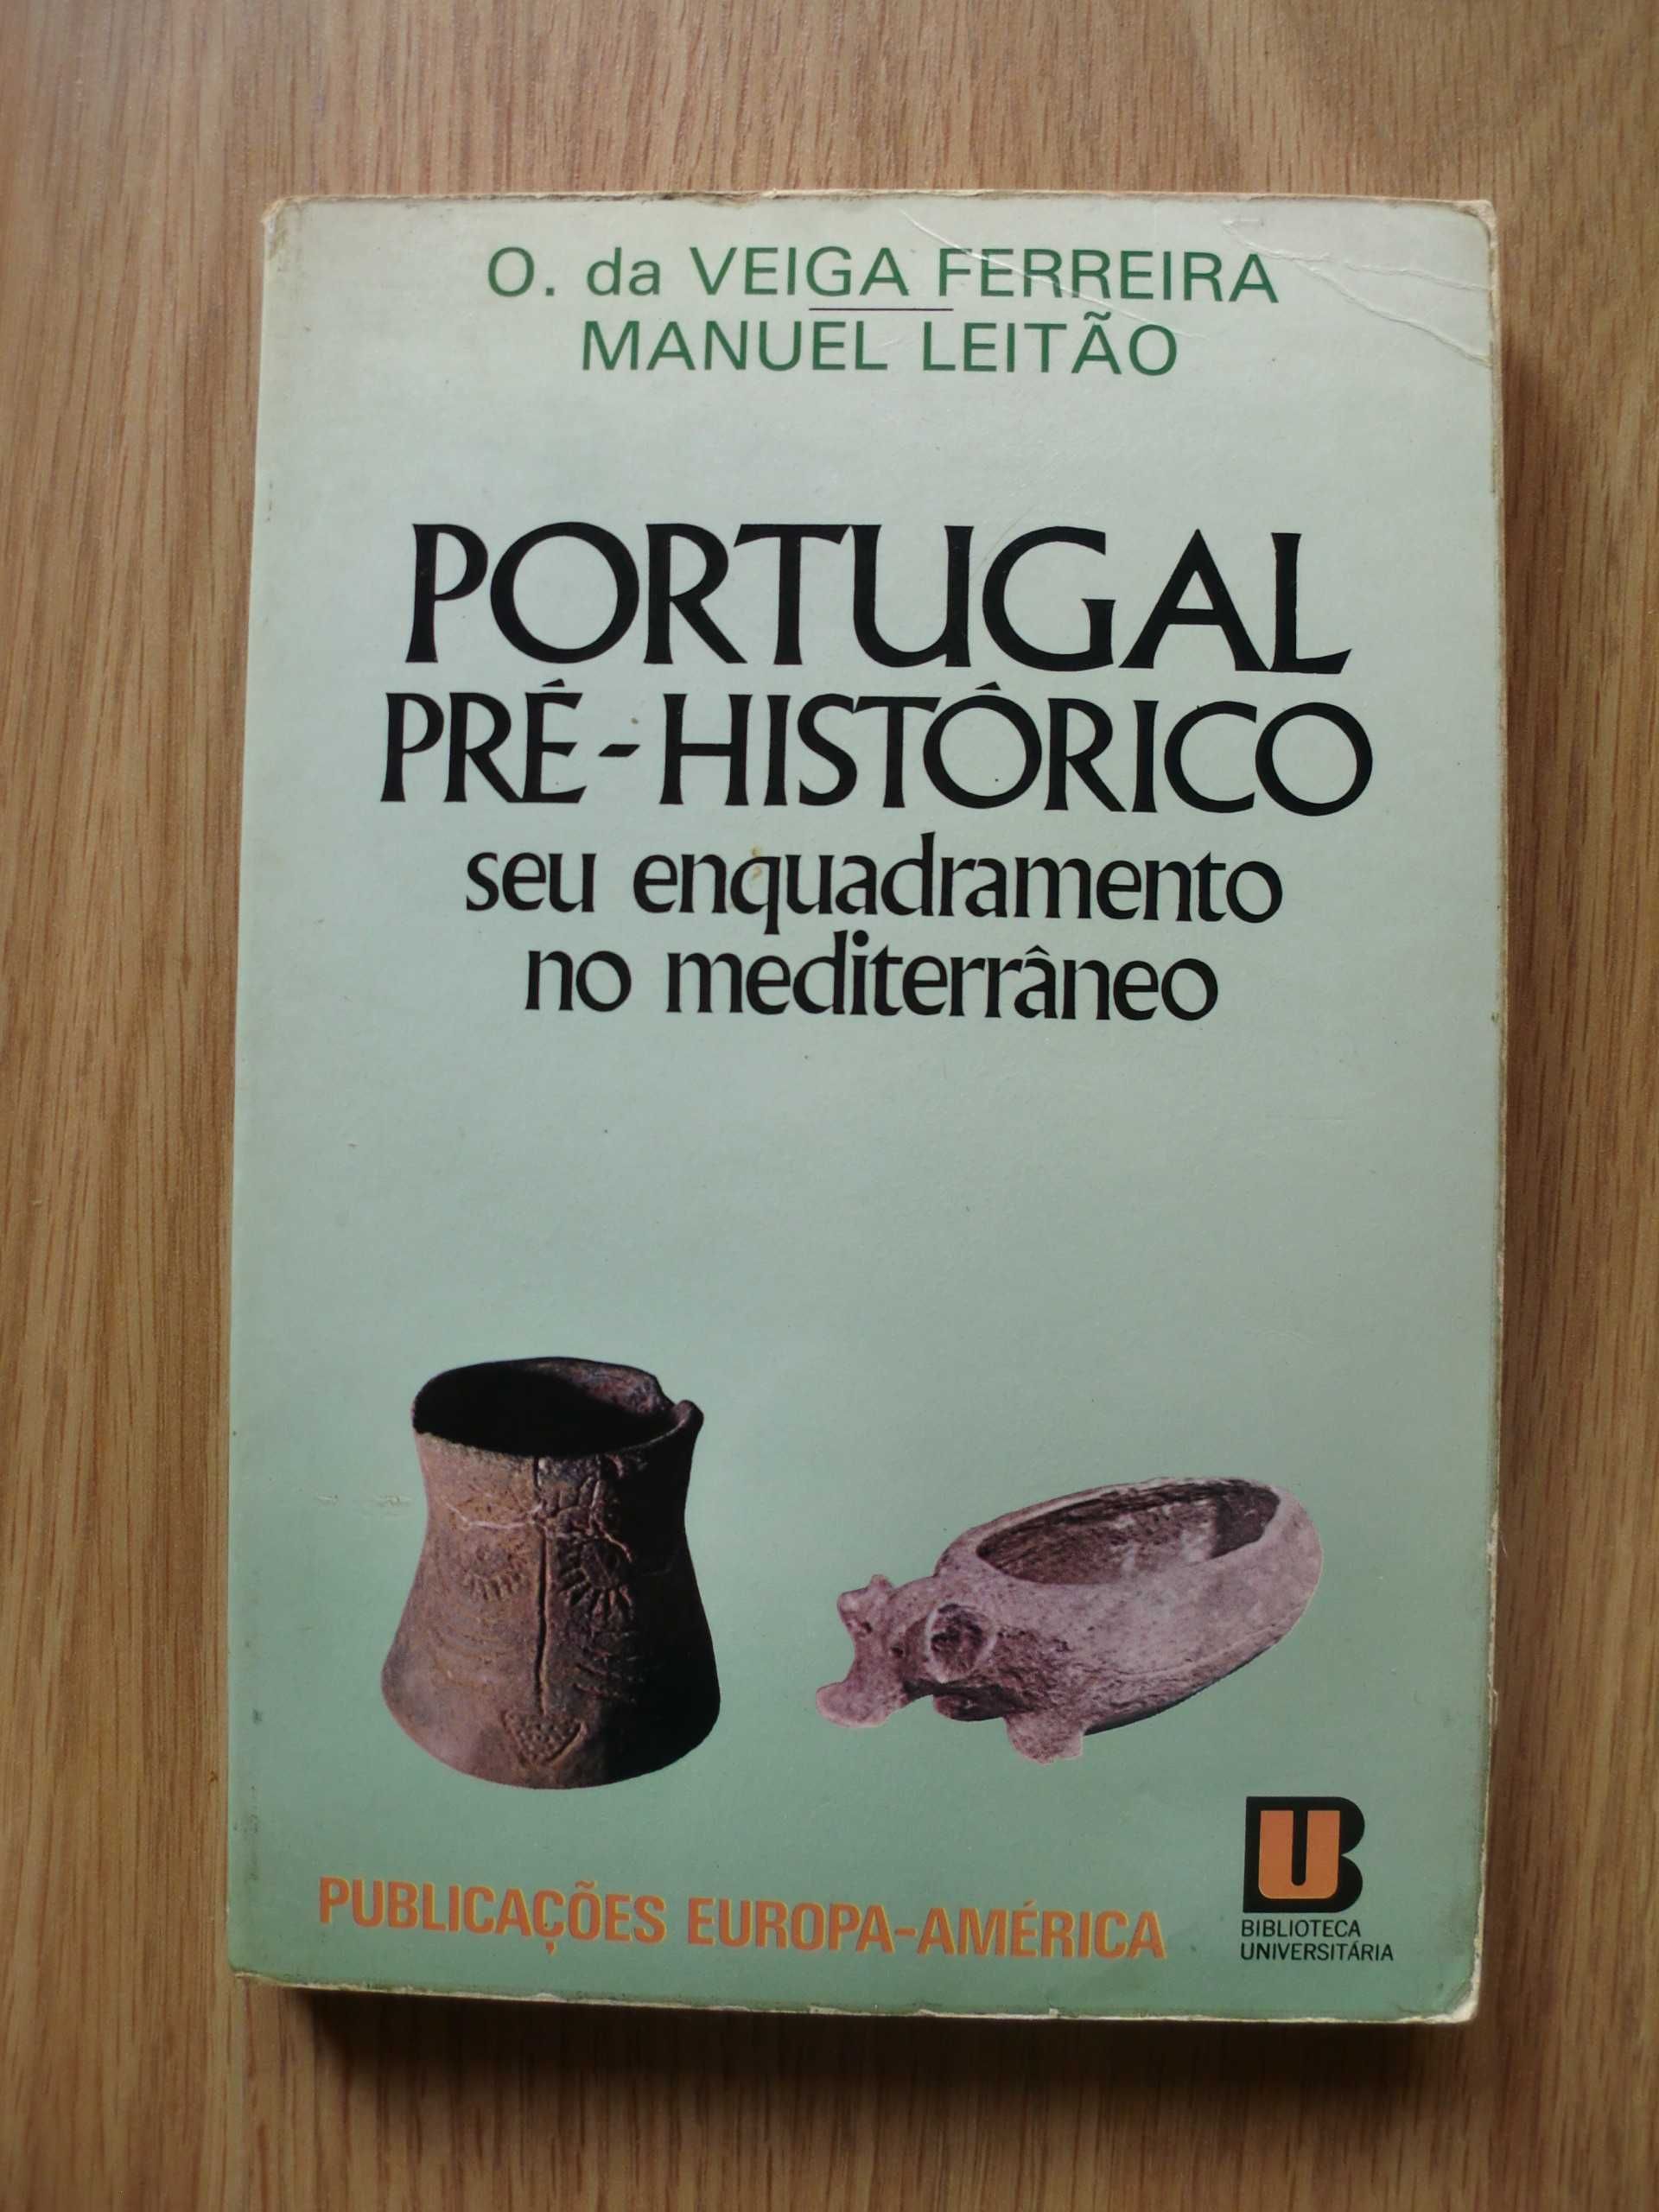 Portugal Pré-histórico
de O. da Veiga Ferreira e Manuel Leitão